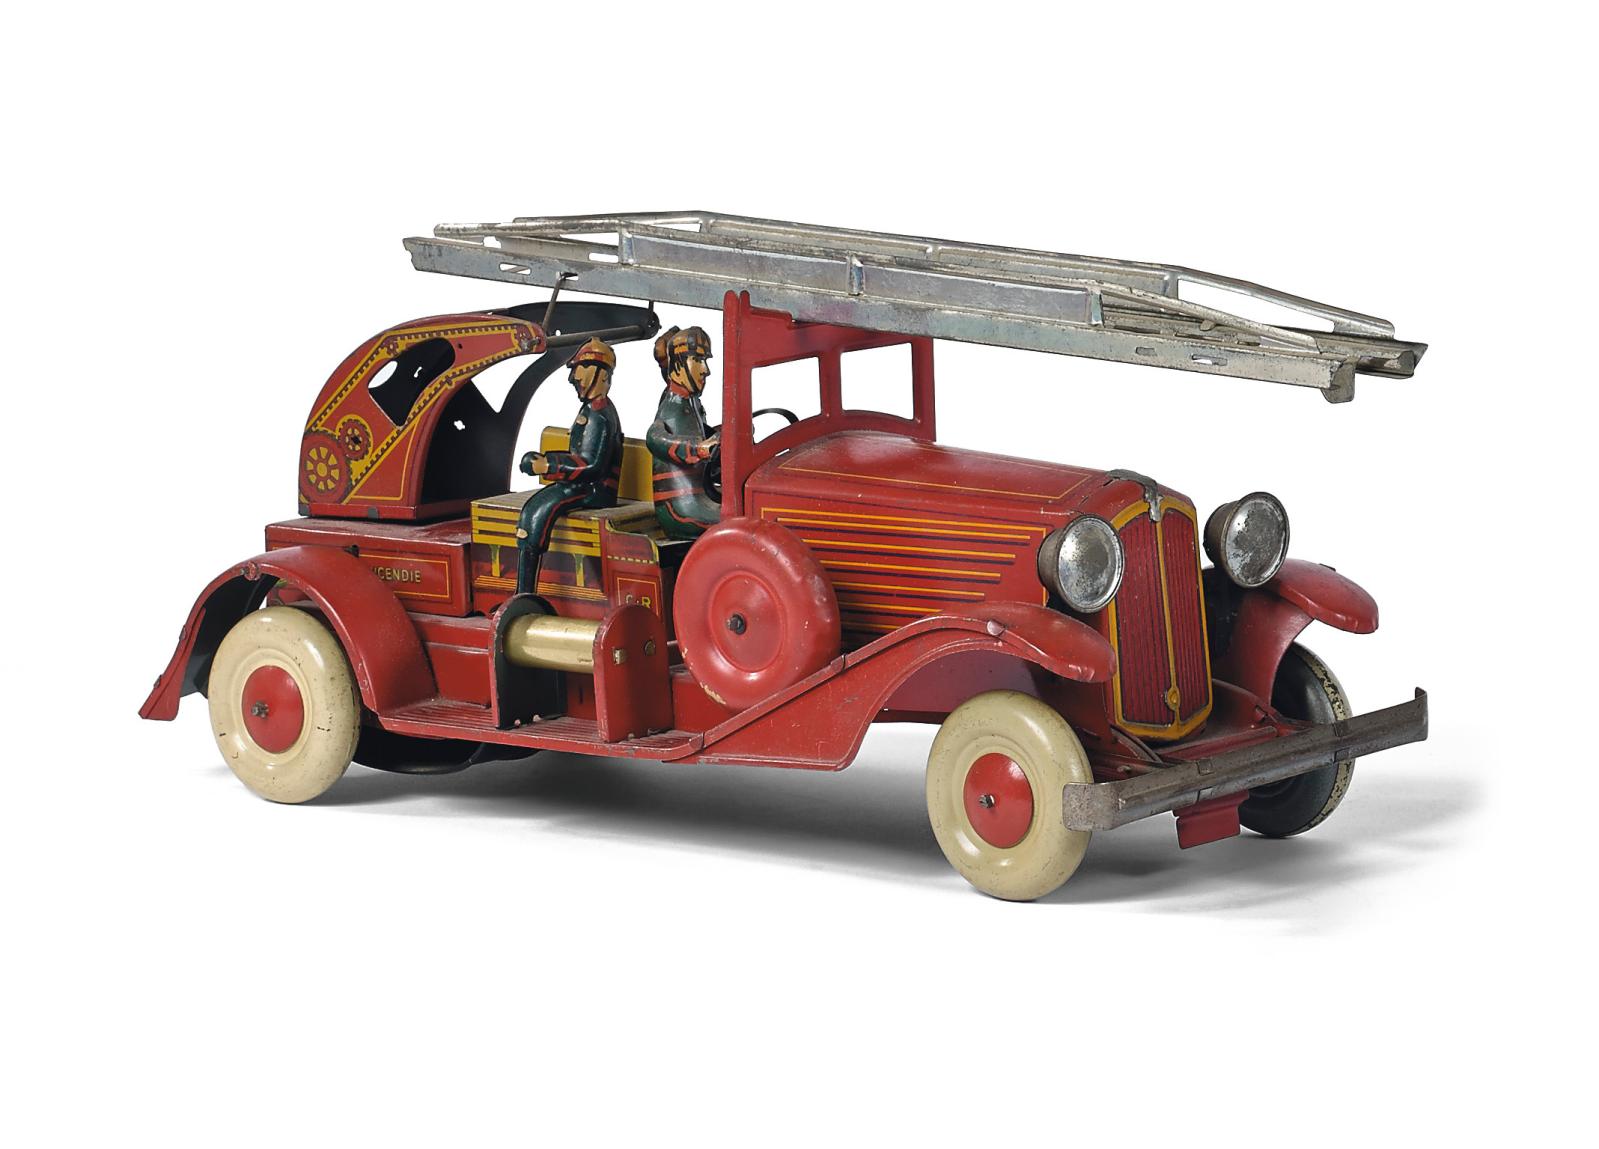 Manufacture de jouets C.R. (Charles Rossignol), véhicule de pompiers à double échelle en tôle, avec trois pompiers, l. 37 cm. Paris, Drouot, 21 octobr